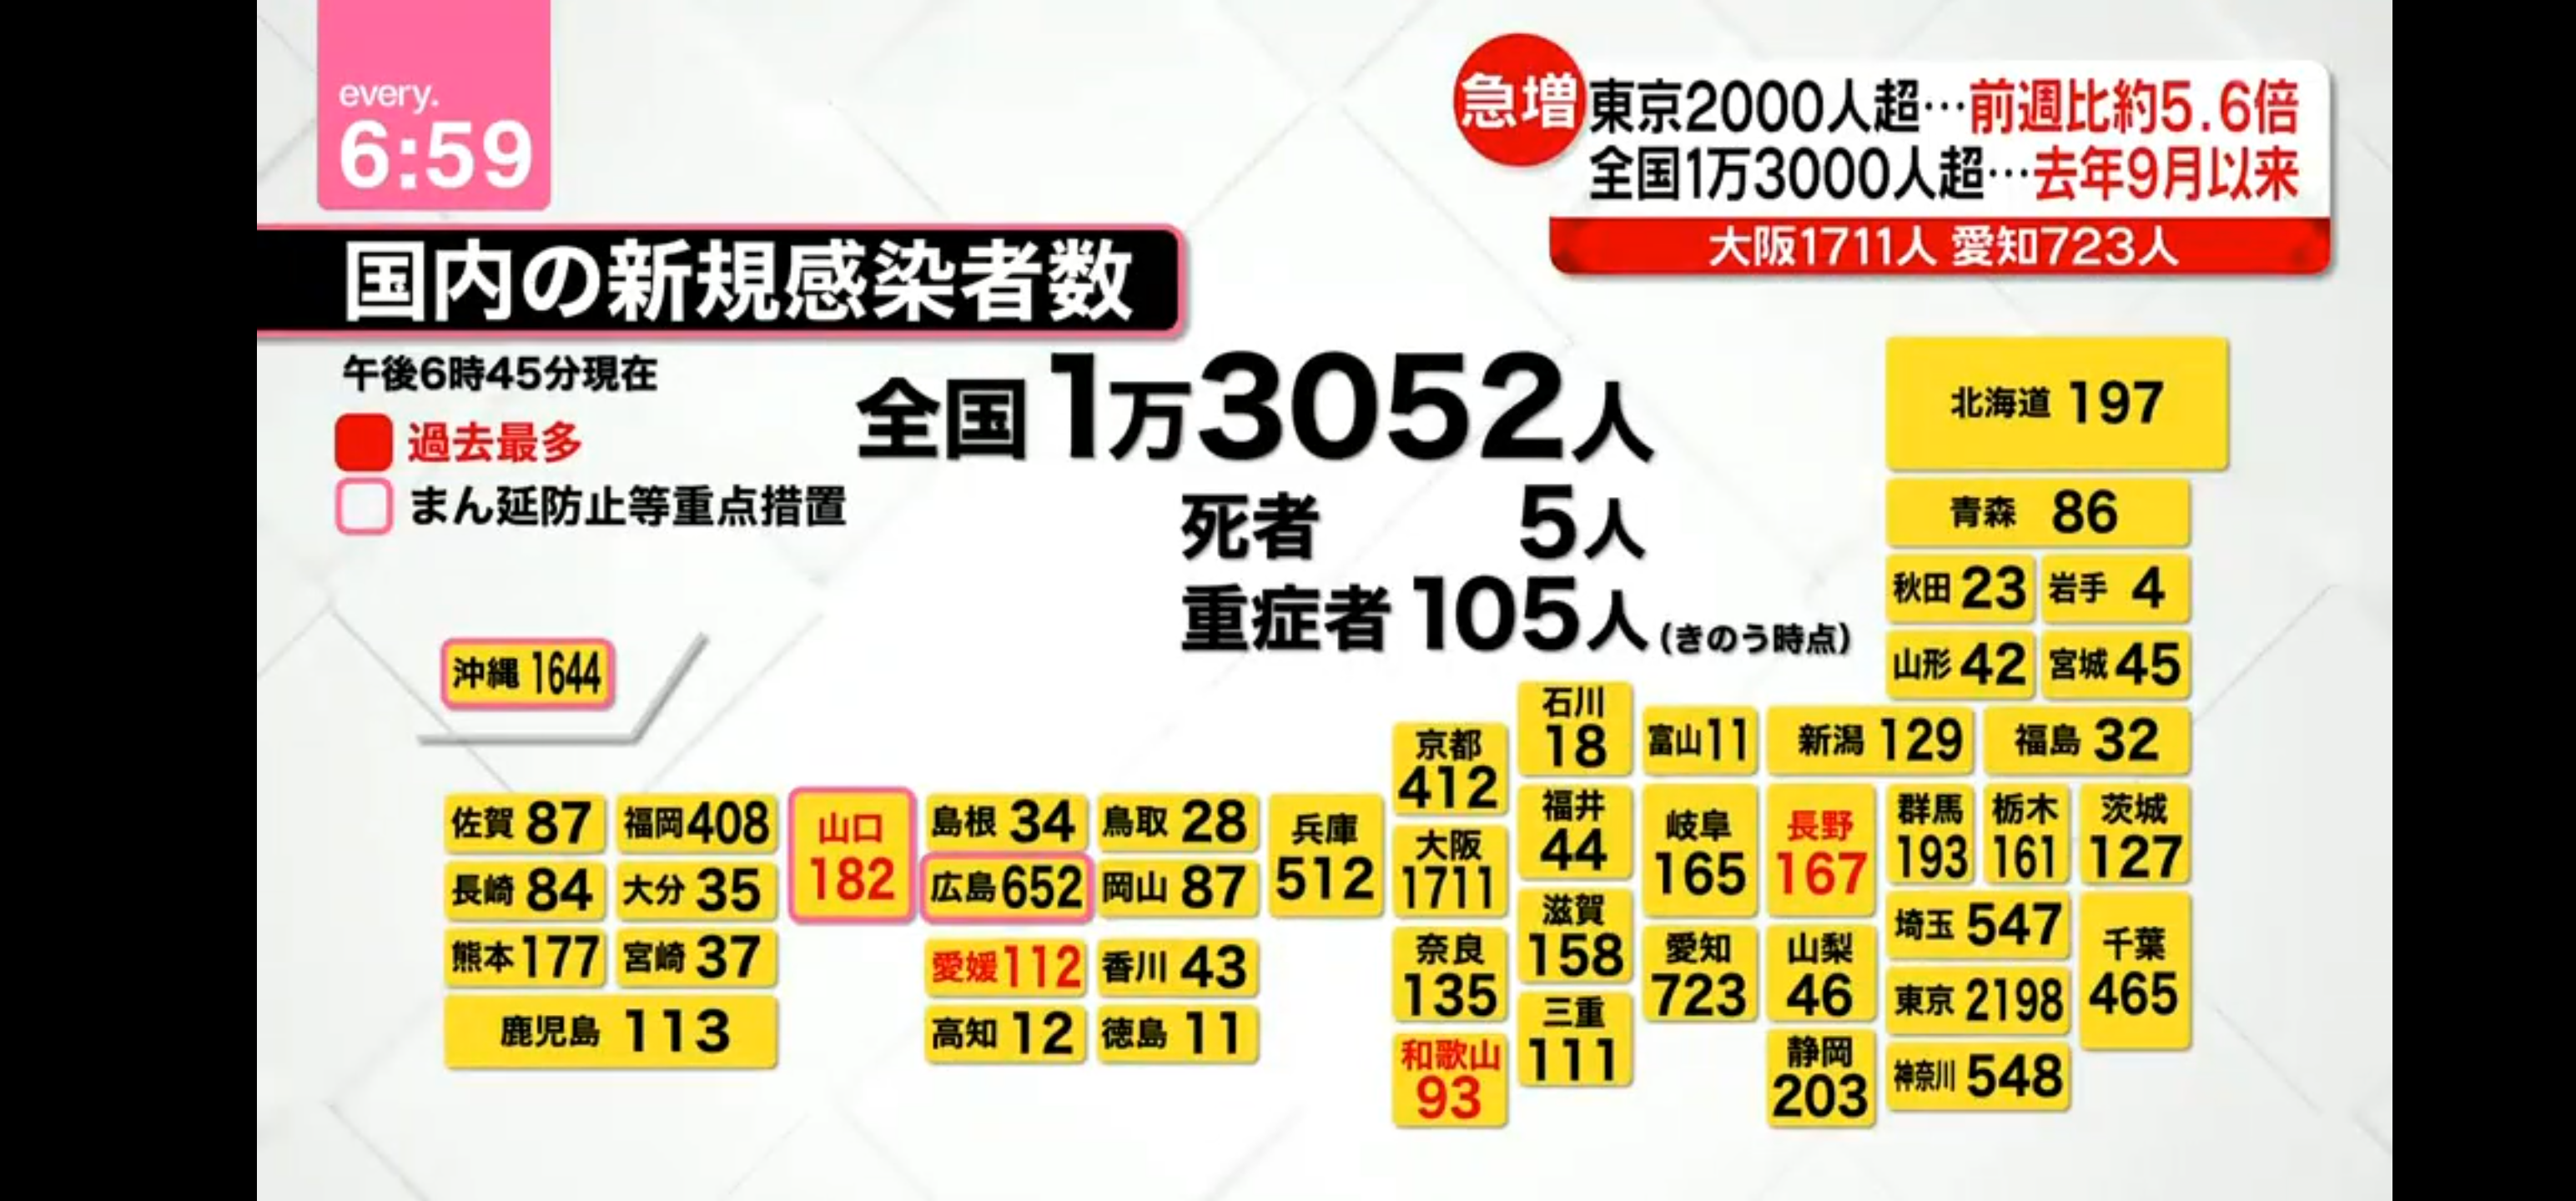 ●1ヵ月前は100人台だった日本確定者の近況